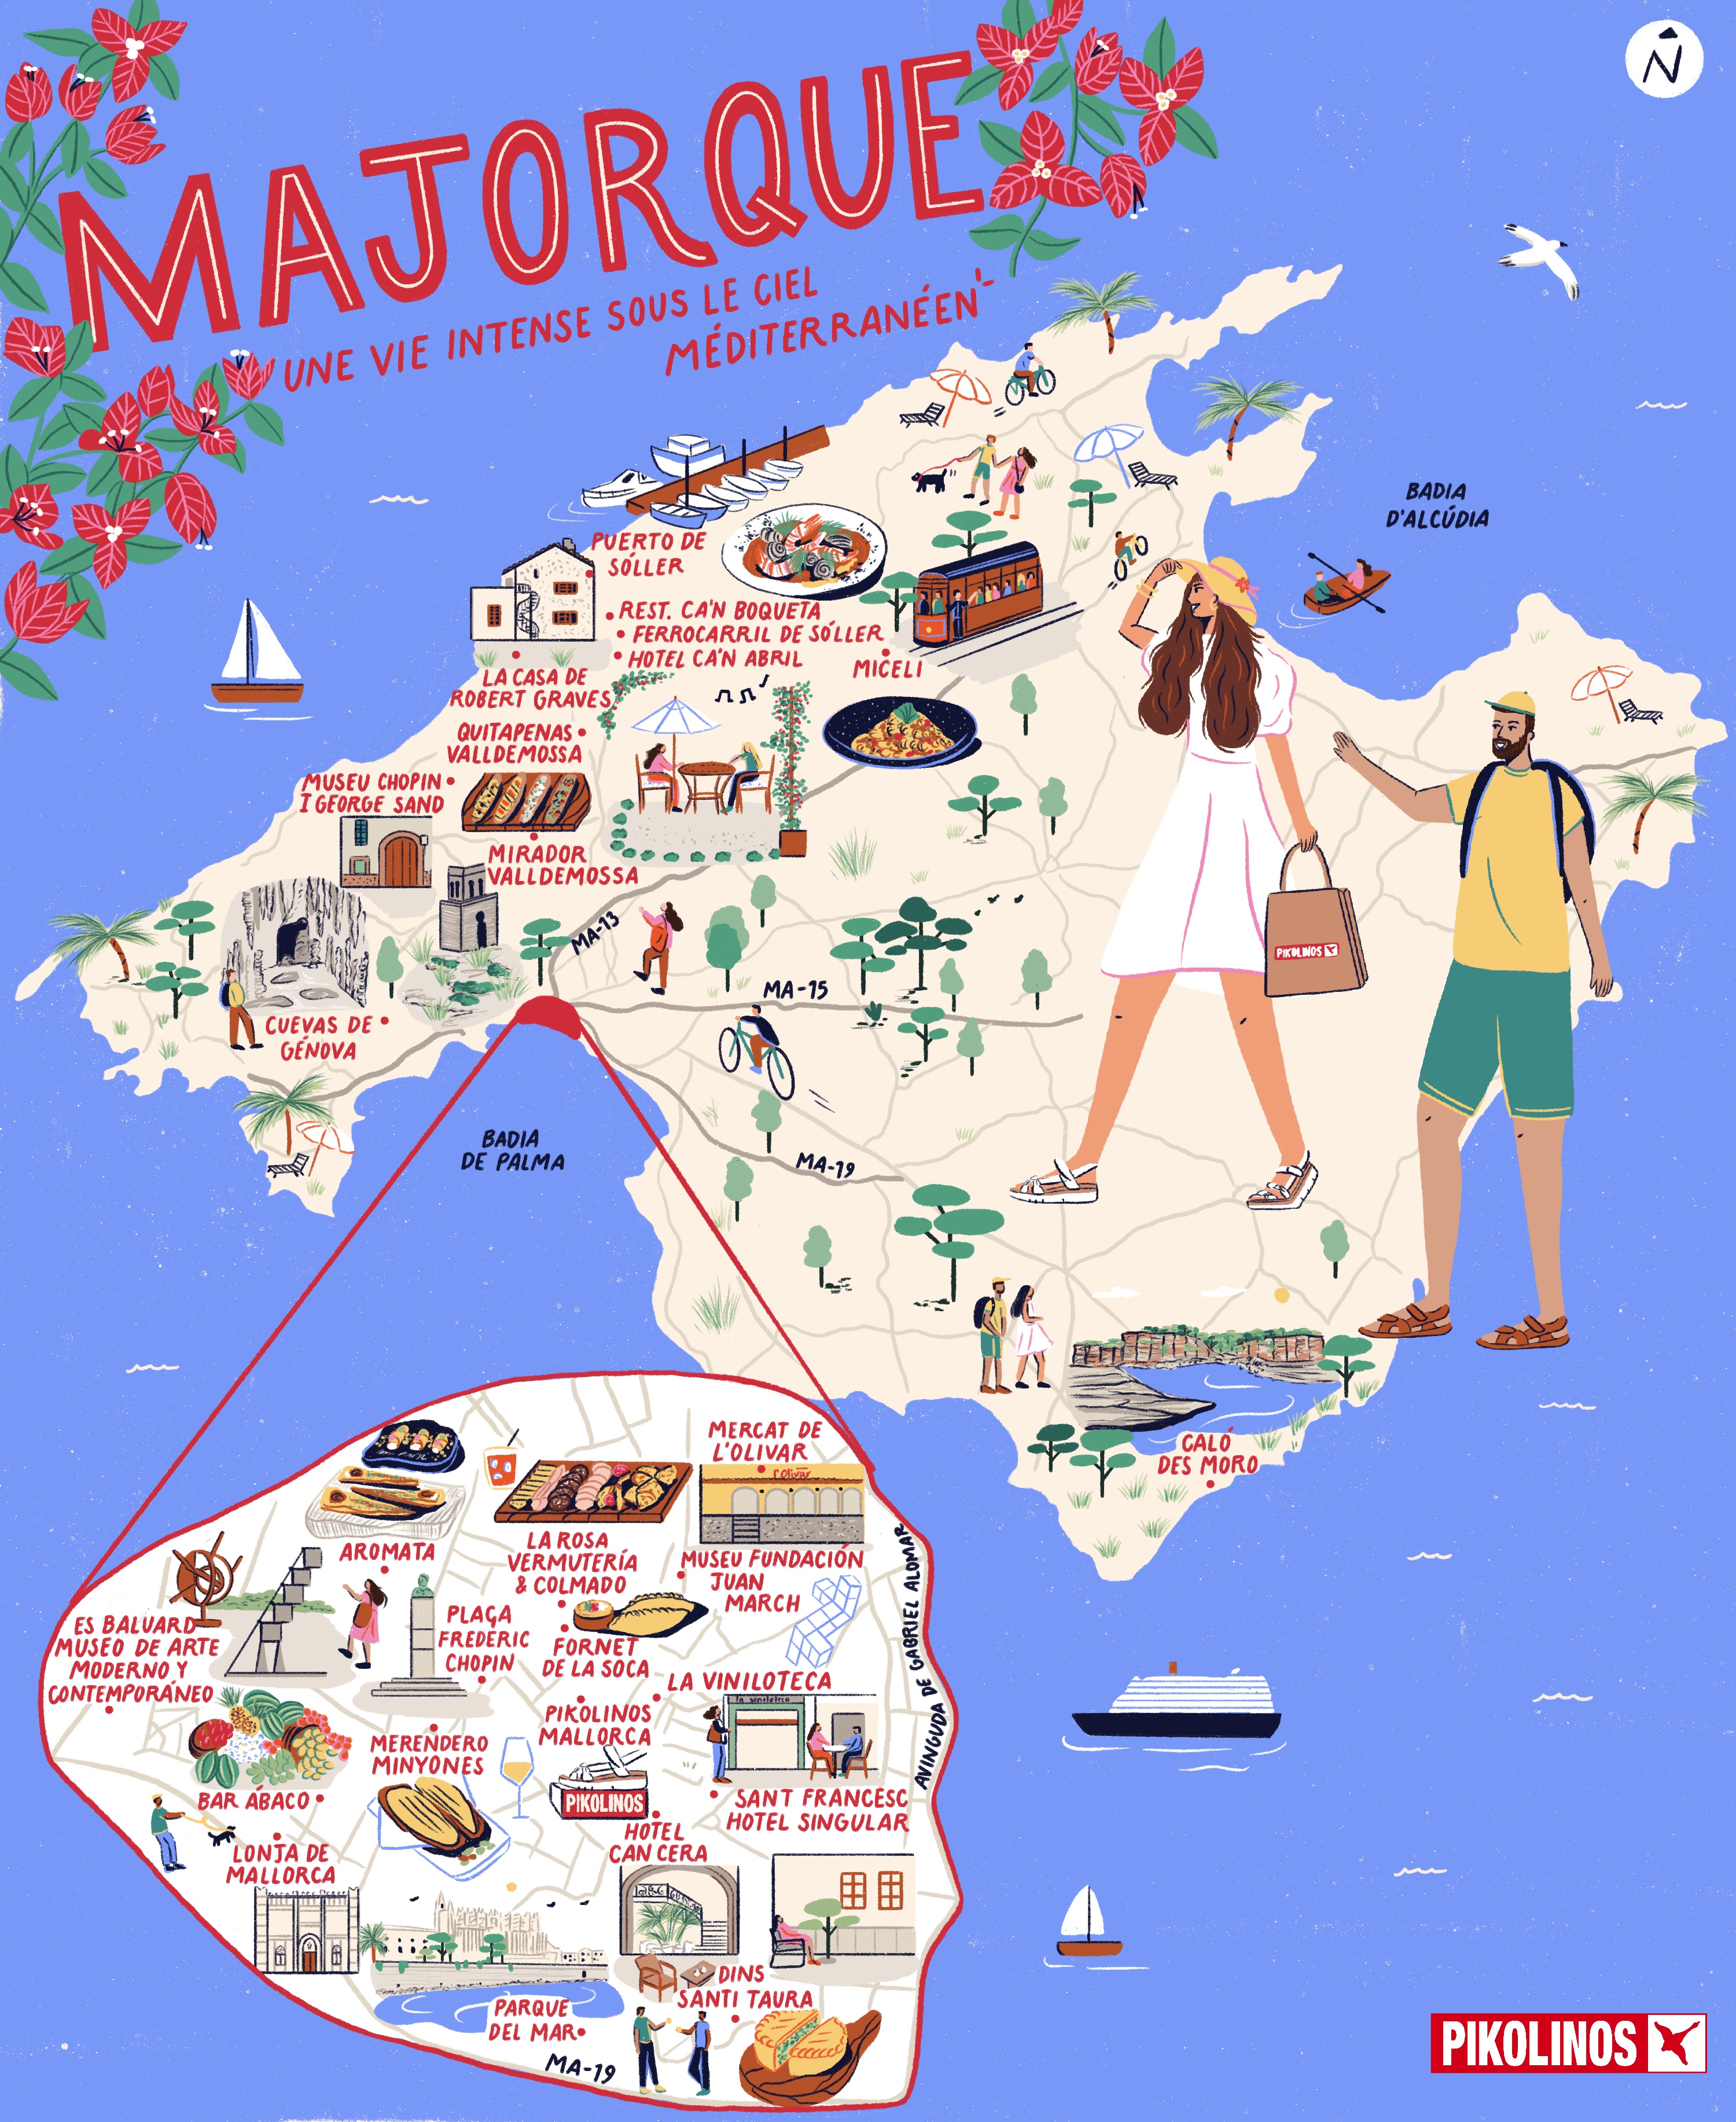 Illustration d'une carte de Majorque avec des dessins de choses intéressantes sur le lieu